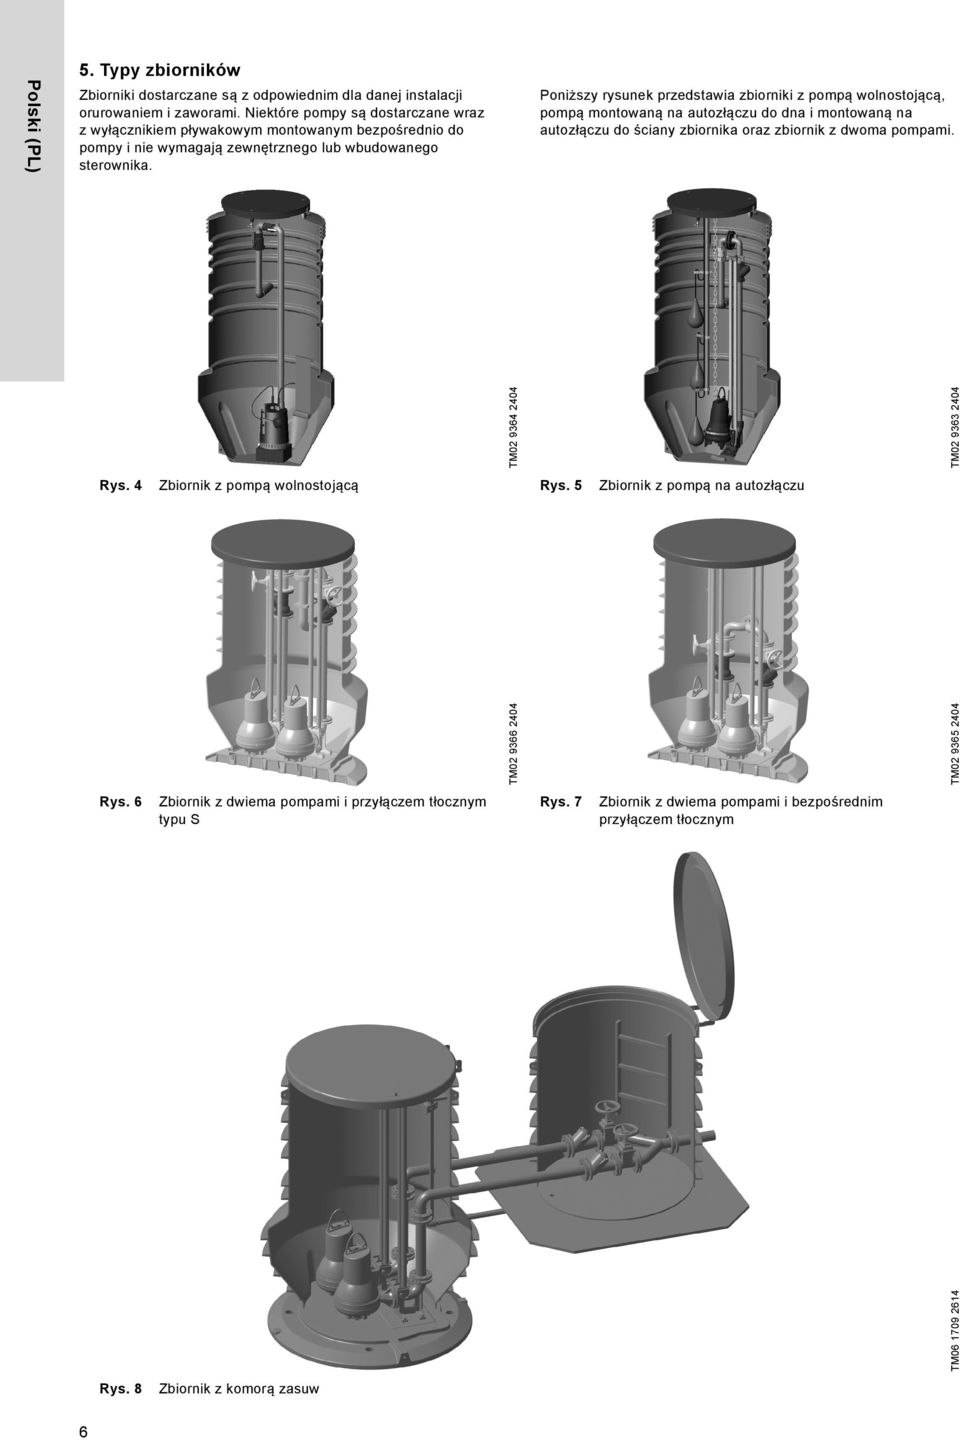 Poniższy rysunek przedstawia zbiorniki z pompą wolnostojącą, pompą montowaną na autozłączu do dna i montowaną na autozłączu do ściany zbiornika oraz zbiornik z dwoma pompami.